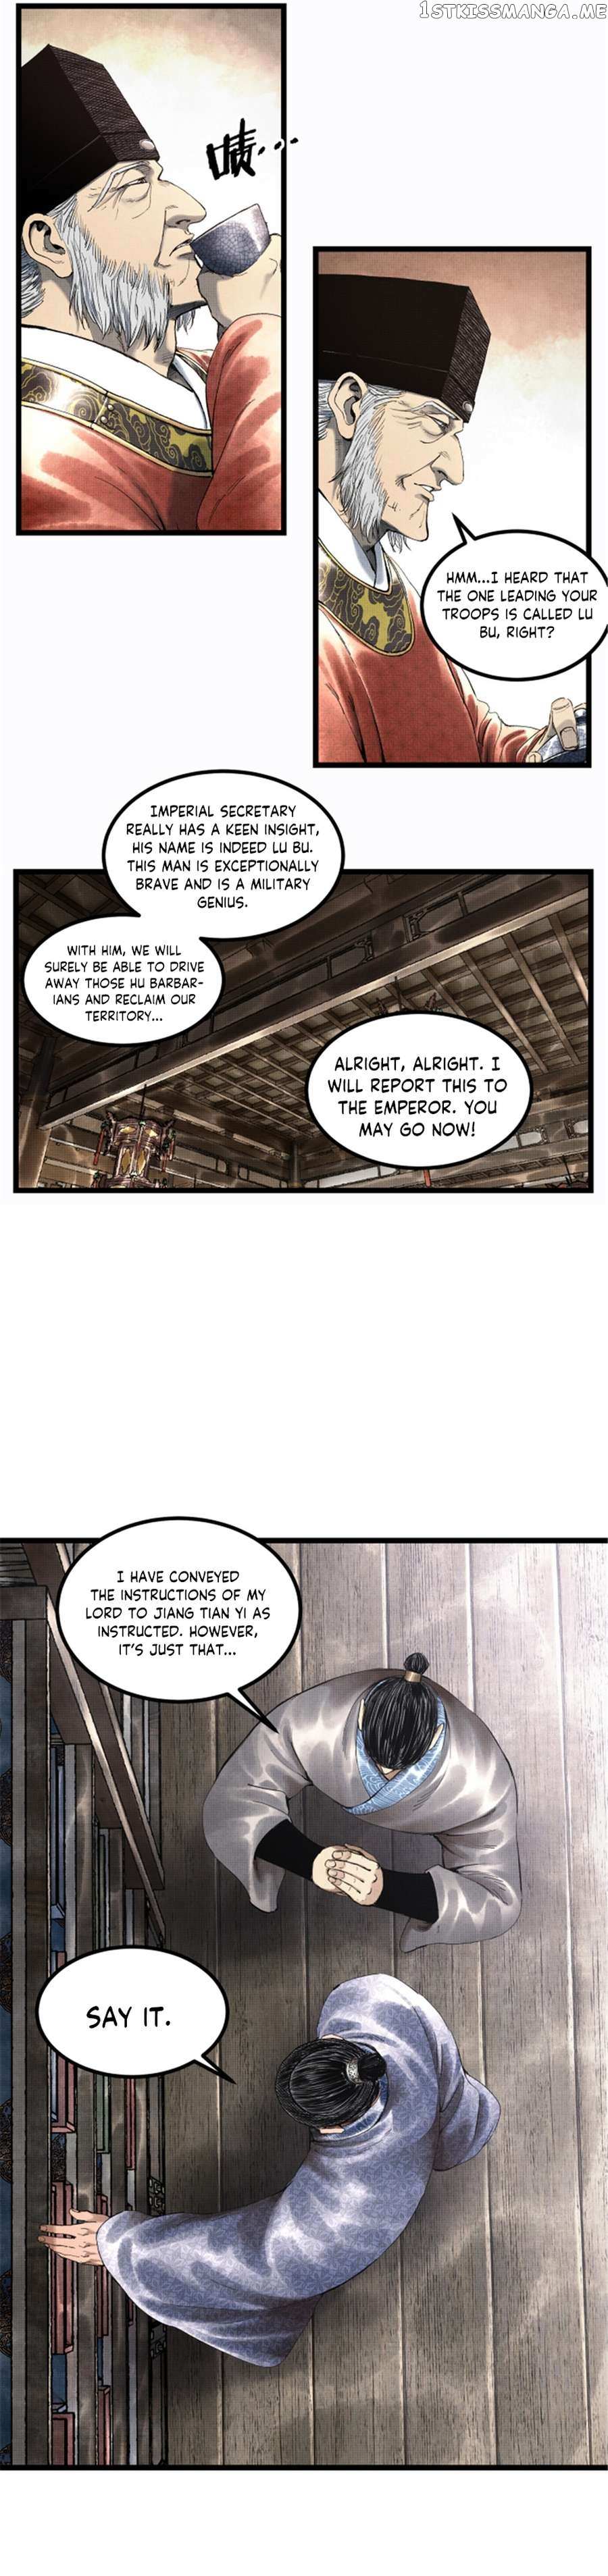 Lu Bu’S Life Story - Page 3